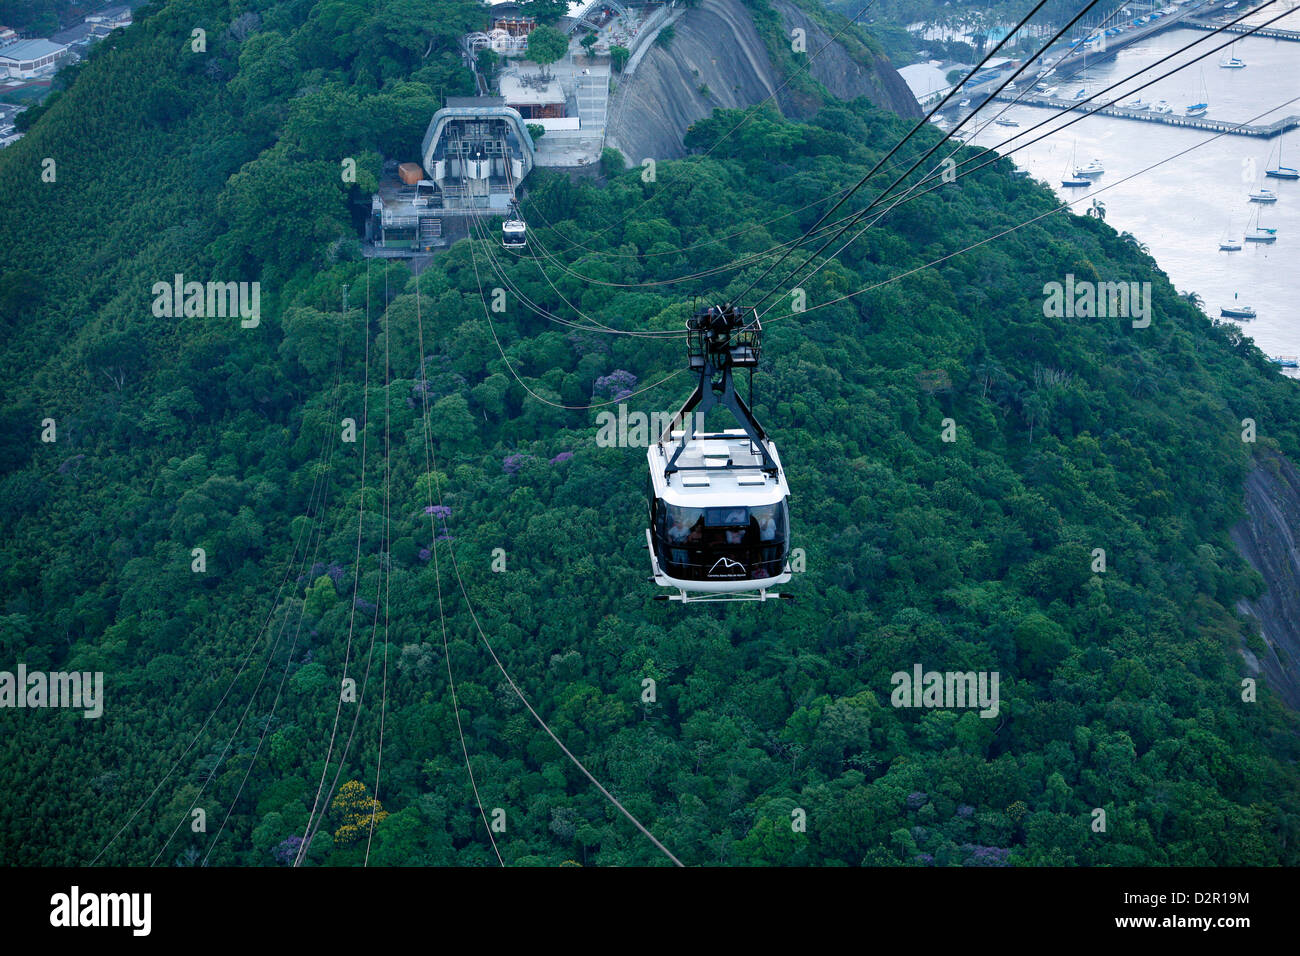 Cable cars at the Pao de Acucar (Sugar Loaf mountain), Rio de Janeiro, Brazil, South America Stock Photo